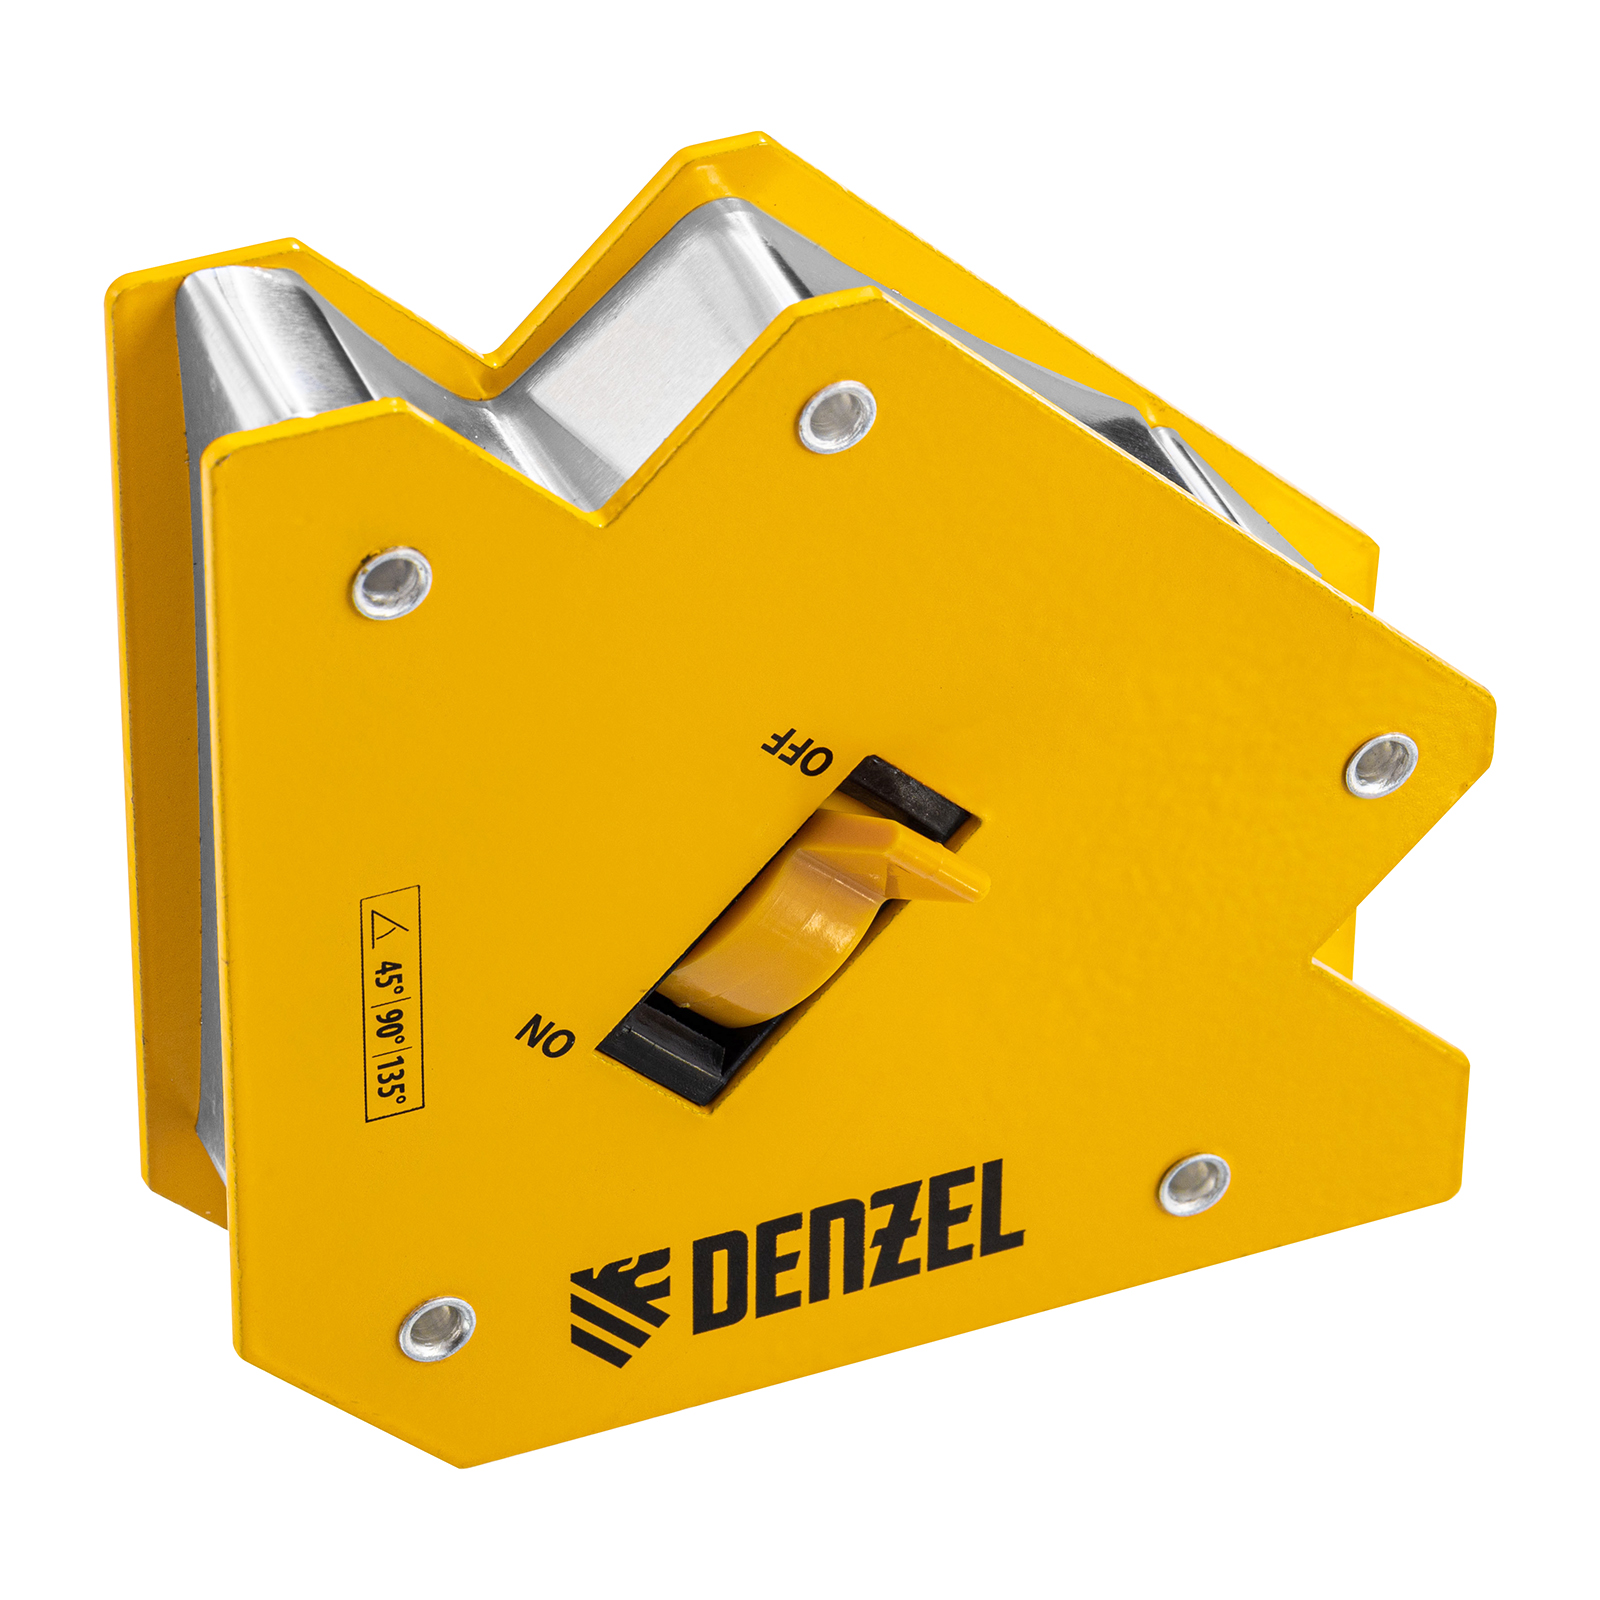 Фиксатор магнитный отключаемый для сварочных работ DENZEL усилие 30 LB, 45х90х135 гр 97563 фиксатор магнитный для сварочных работ beorol